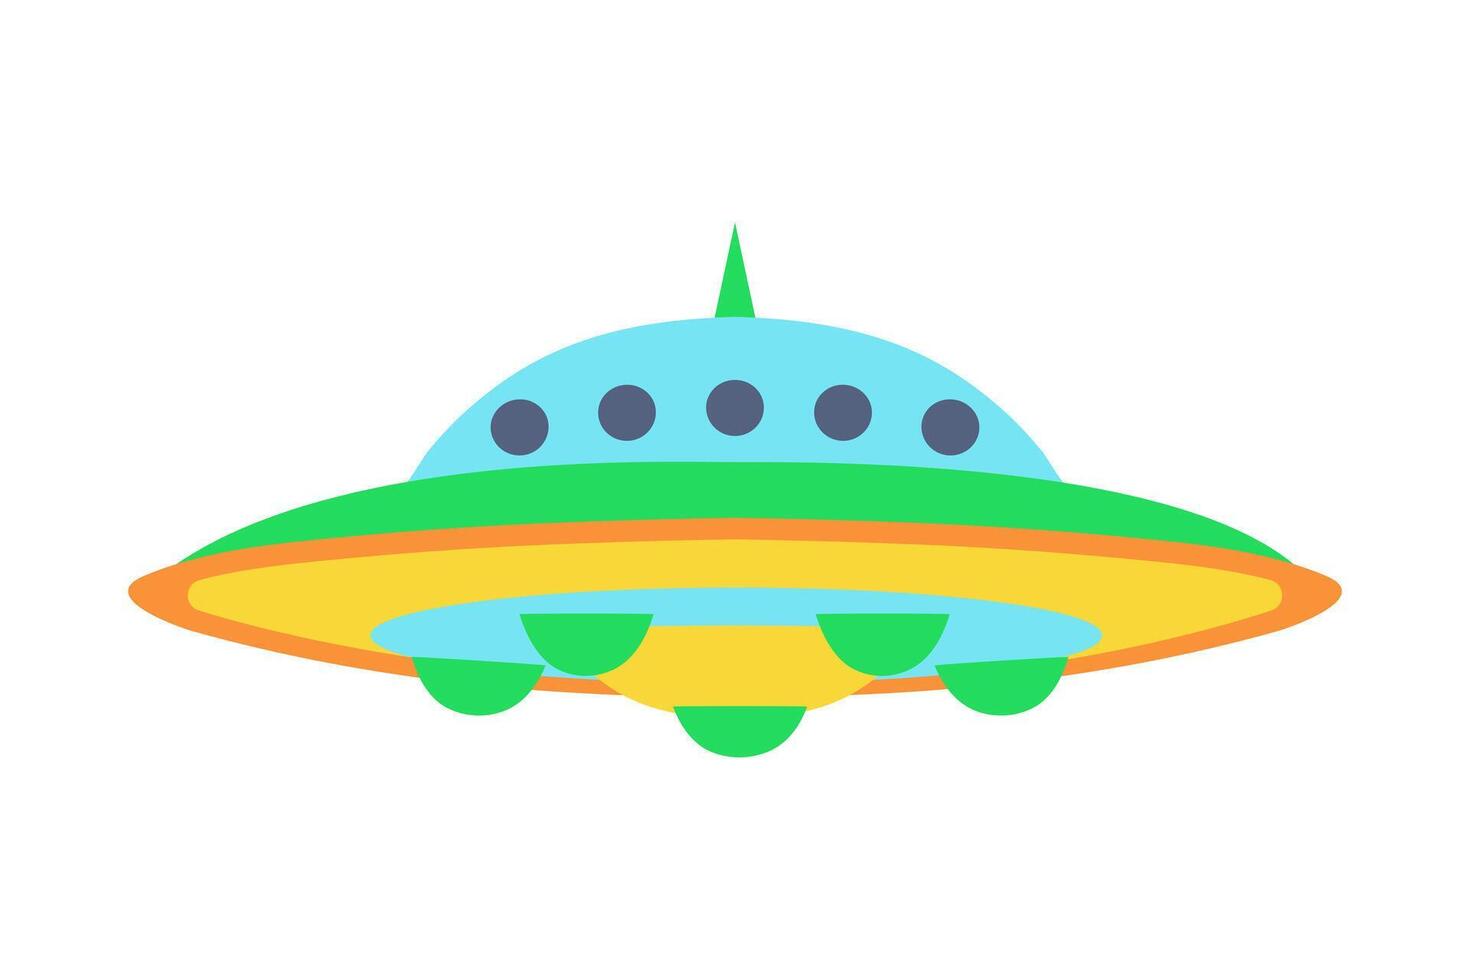 volante piattino. ufo volante navicella spaziale. alieno navicella spaziale. piatto vettore illustrazione.